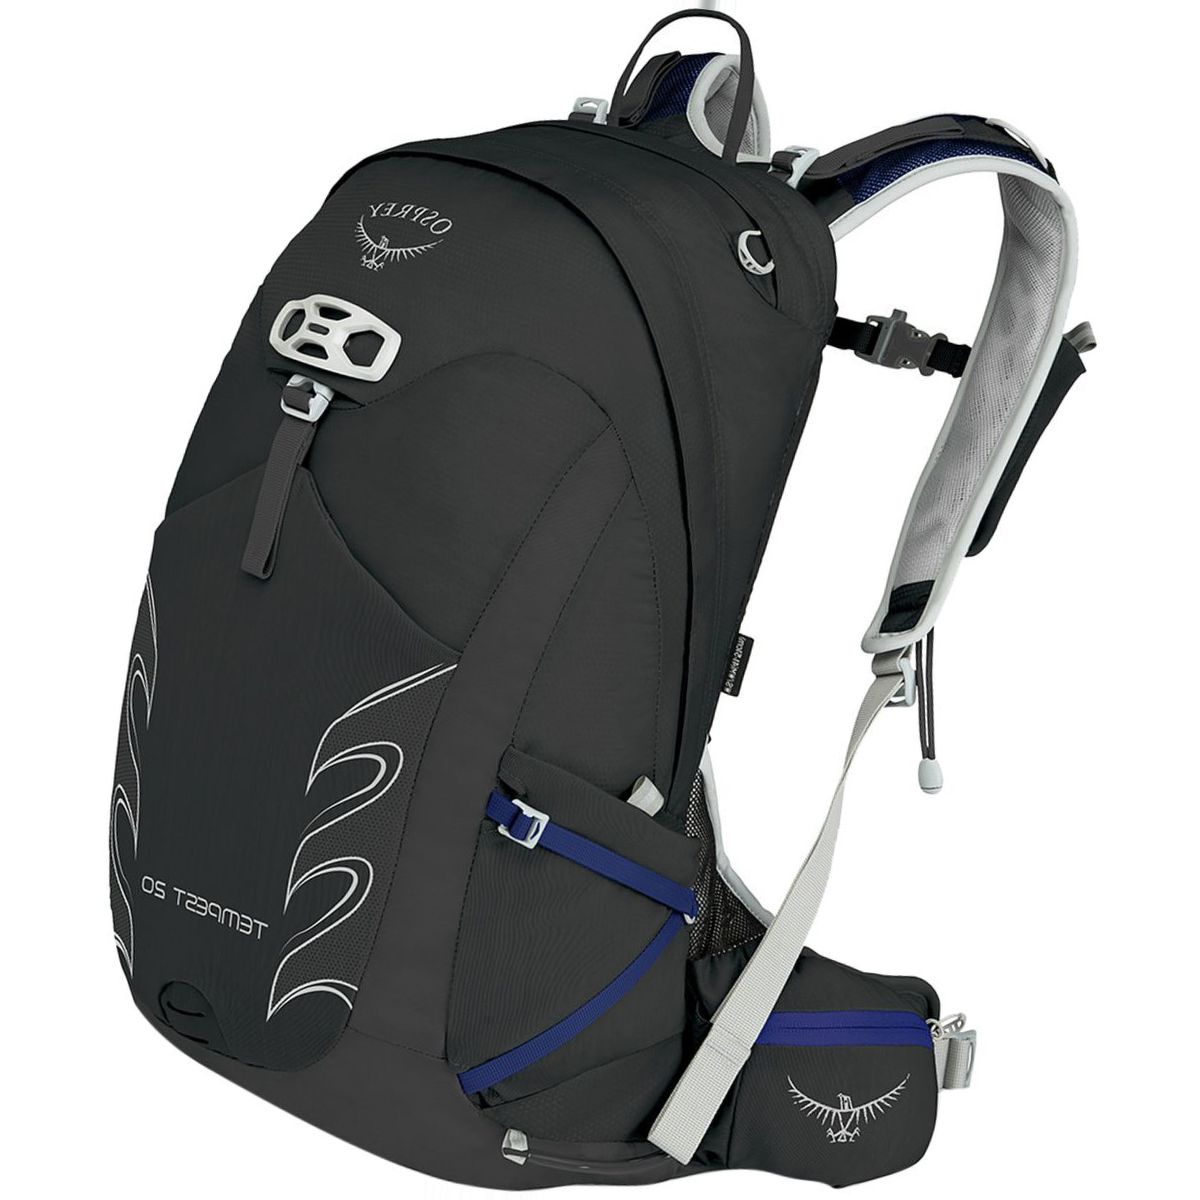 Osprey Packs Tempest 20L Backpack - Women's